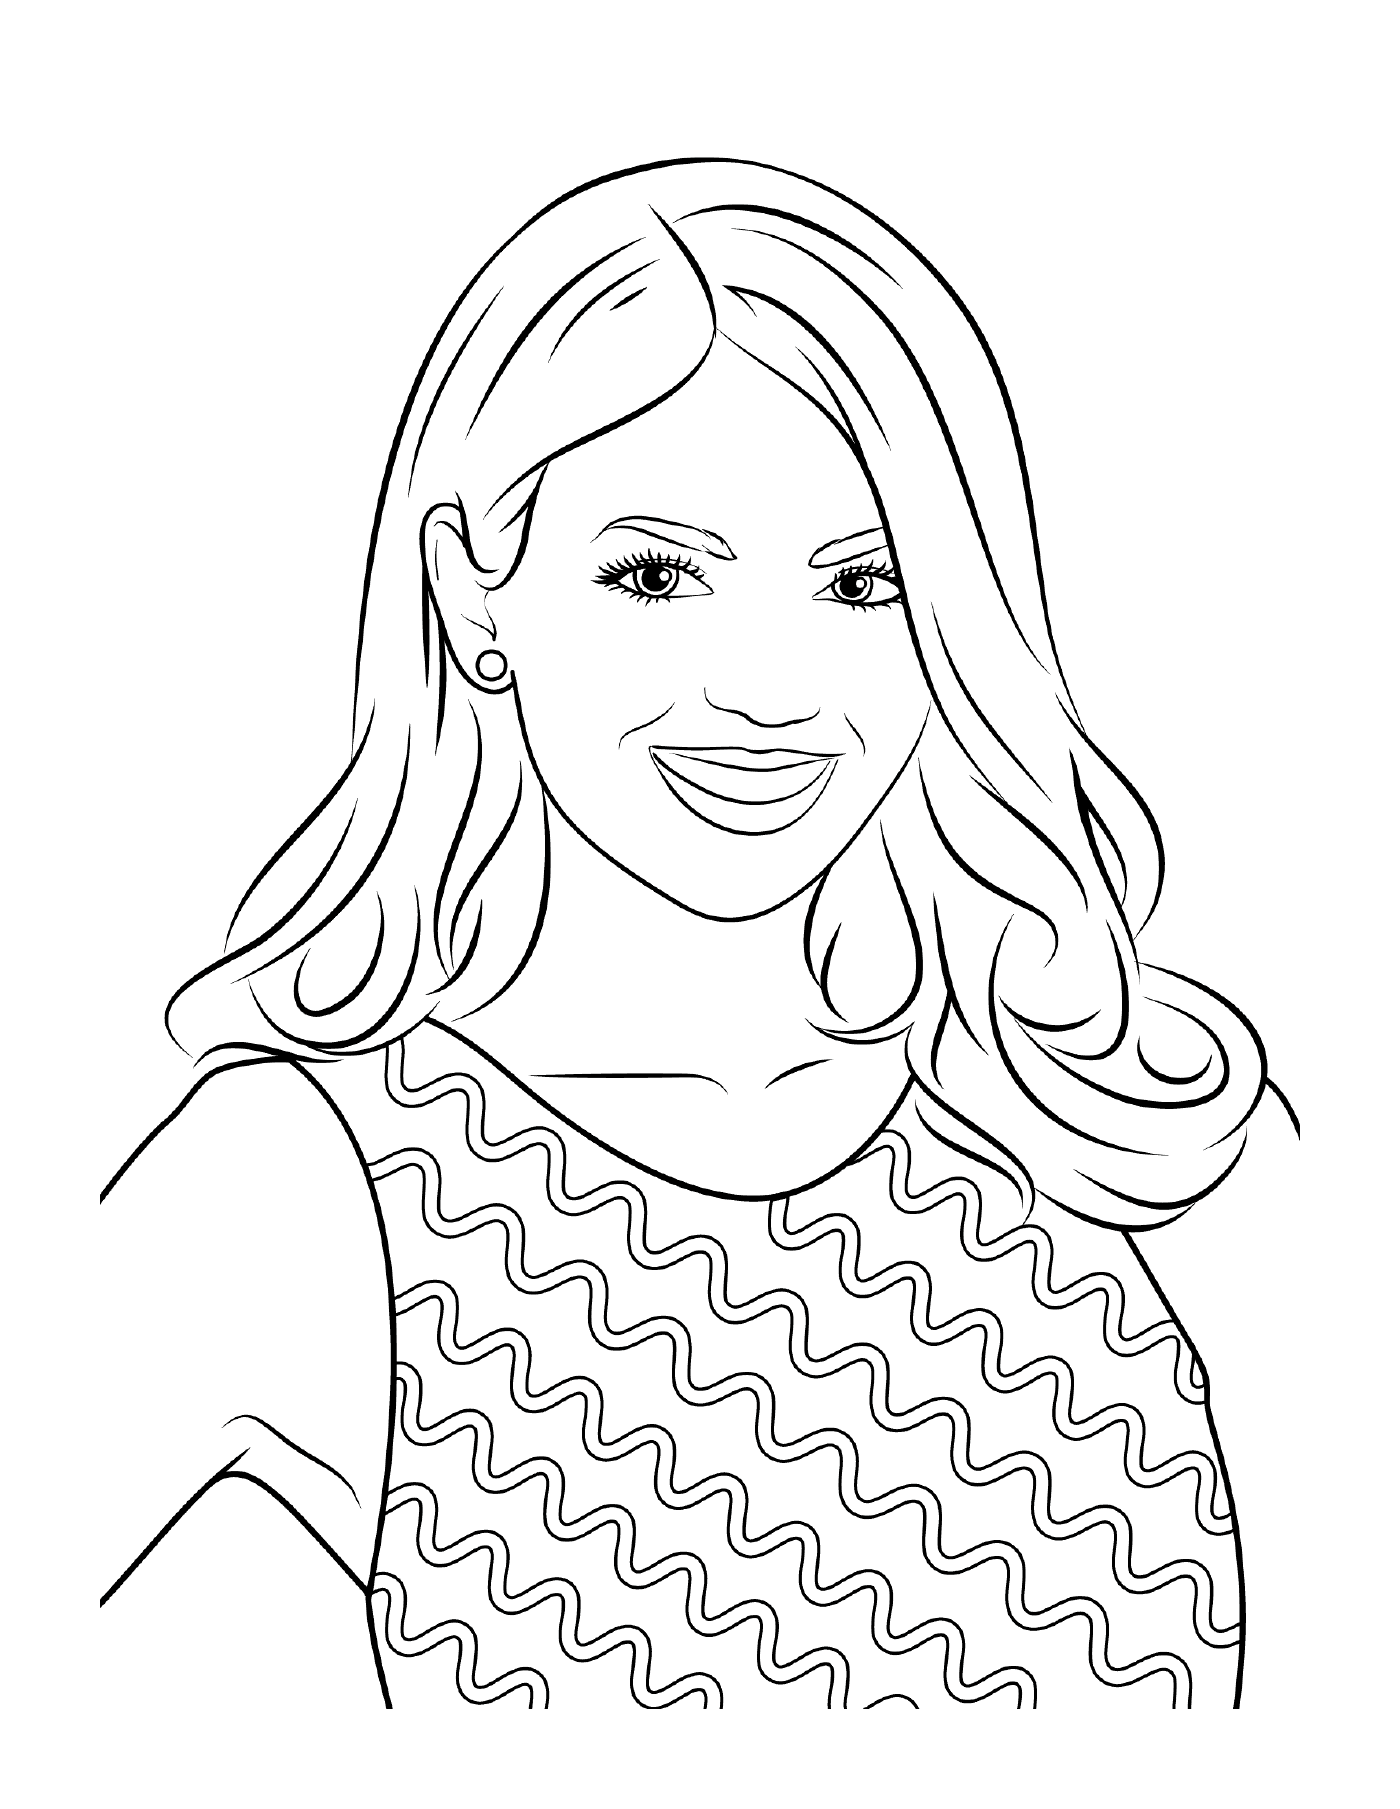  Victoria Justice, famosa estrella, sonriente 